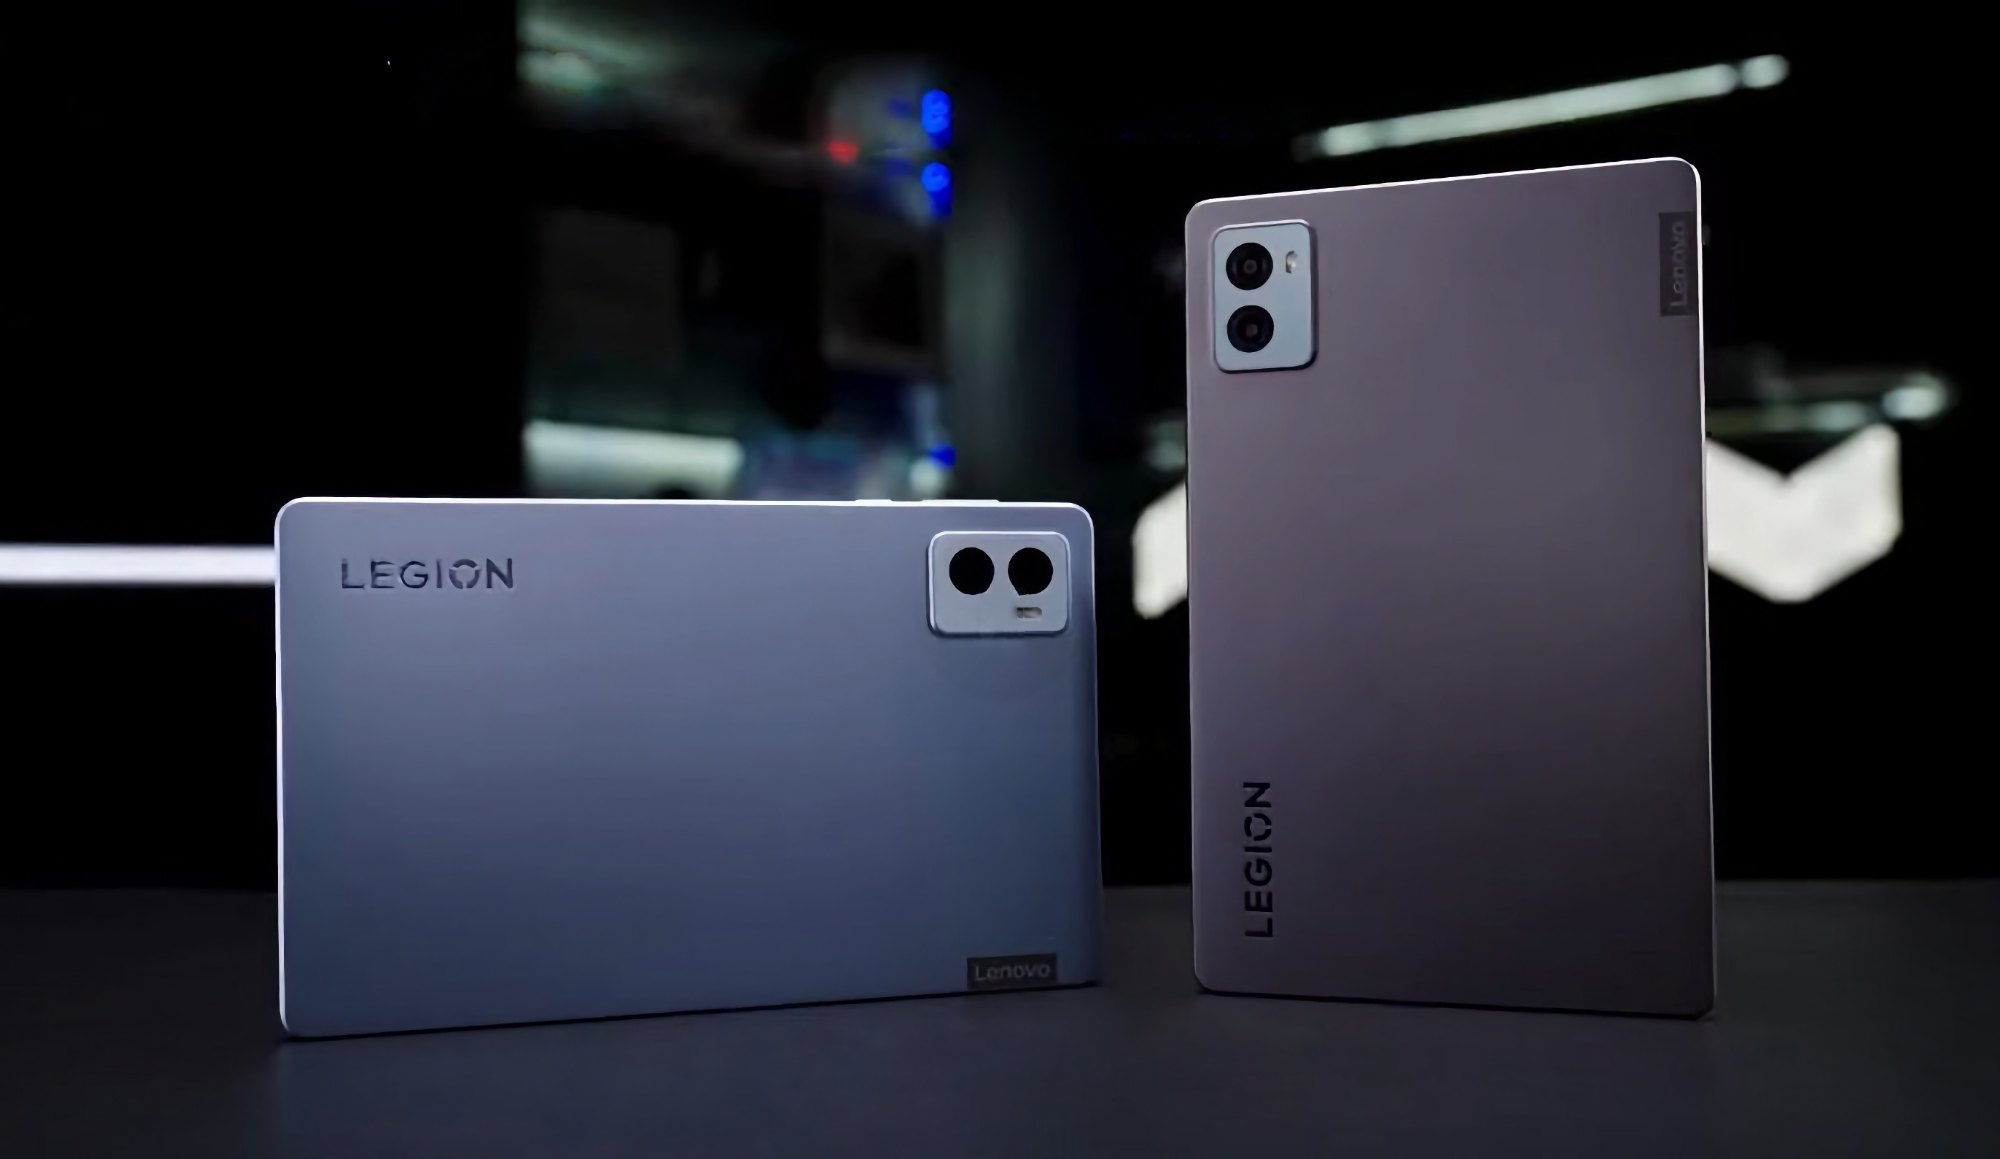 Tage vor der Ankündigung: das Lenovo Legion Y700 (2023) mit einem Snapdragon 8+ Gen 1 Chip und zwei USB-C Anschlüssen ist in einem Video aufgetaucht